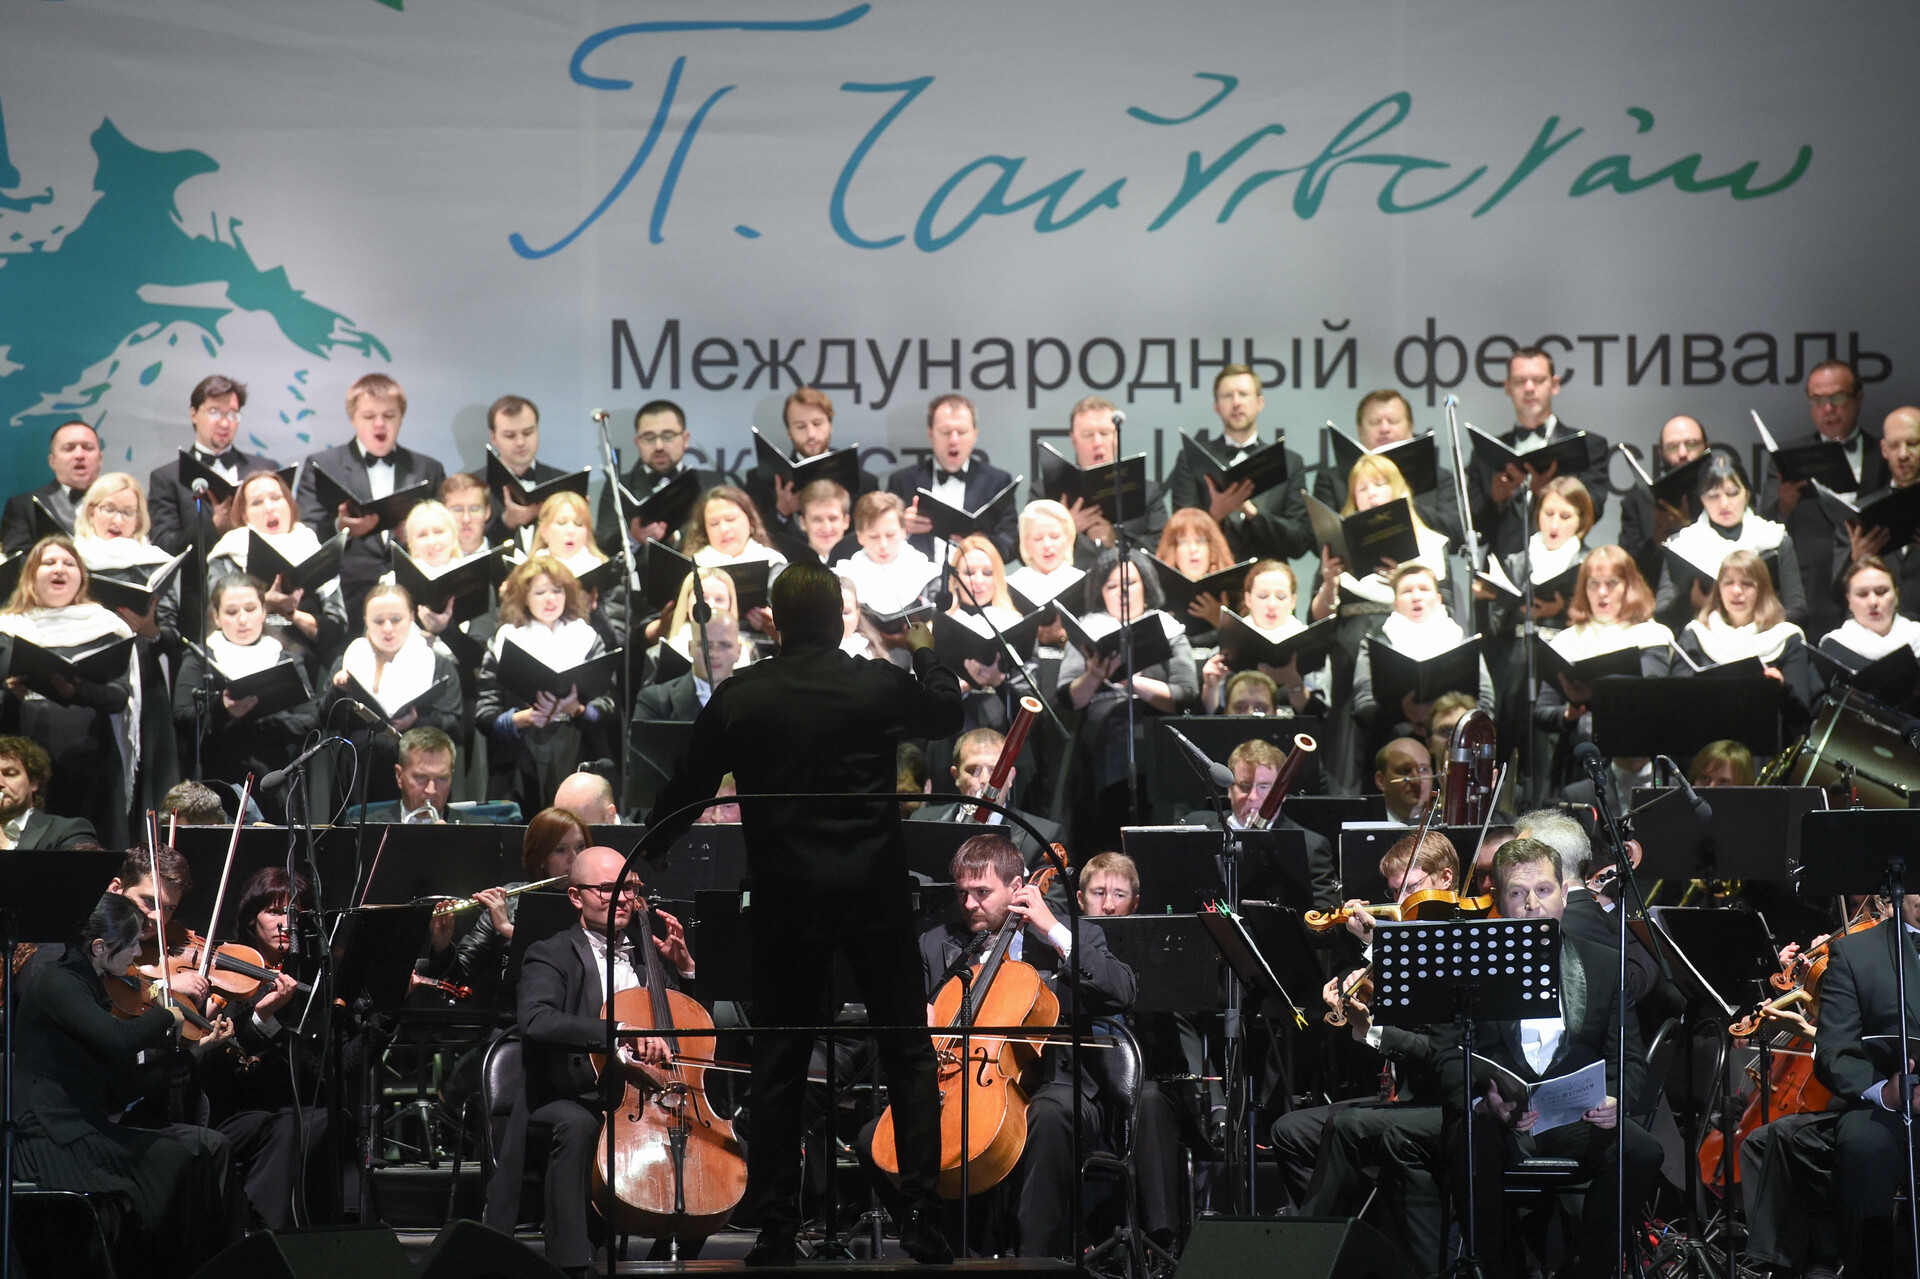 VII Международный фестиваль искусств П.И. Чайковского в Клину: ключевые мероприятия